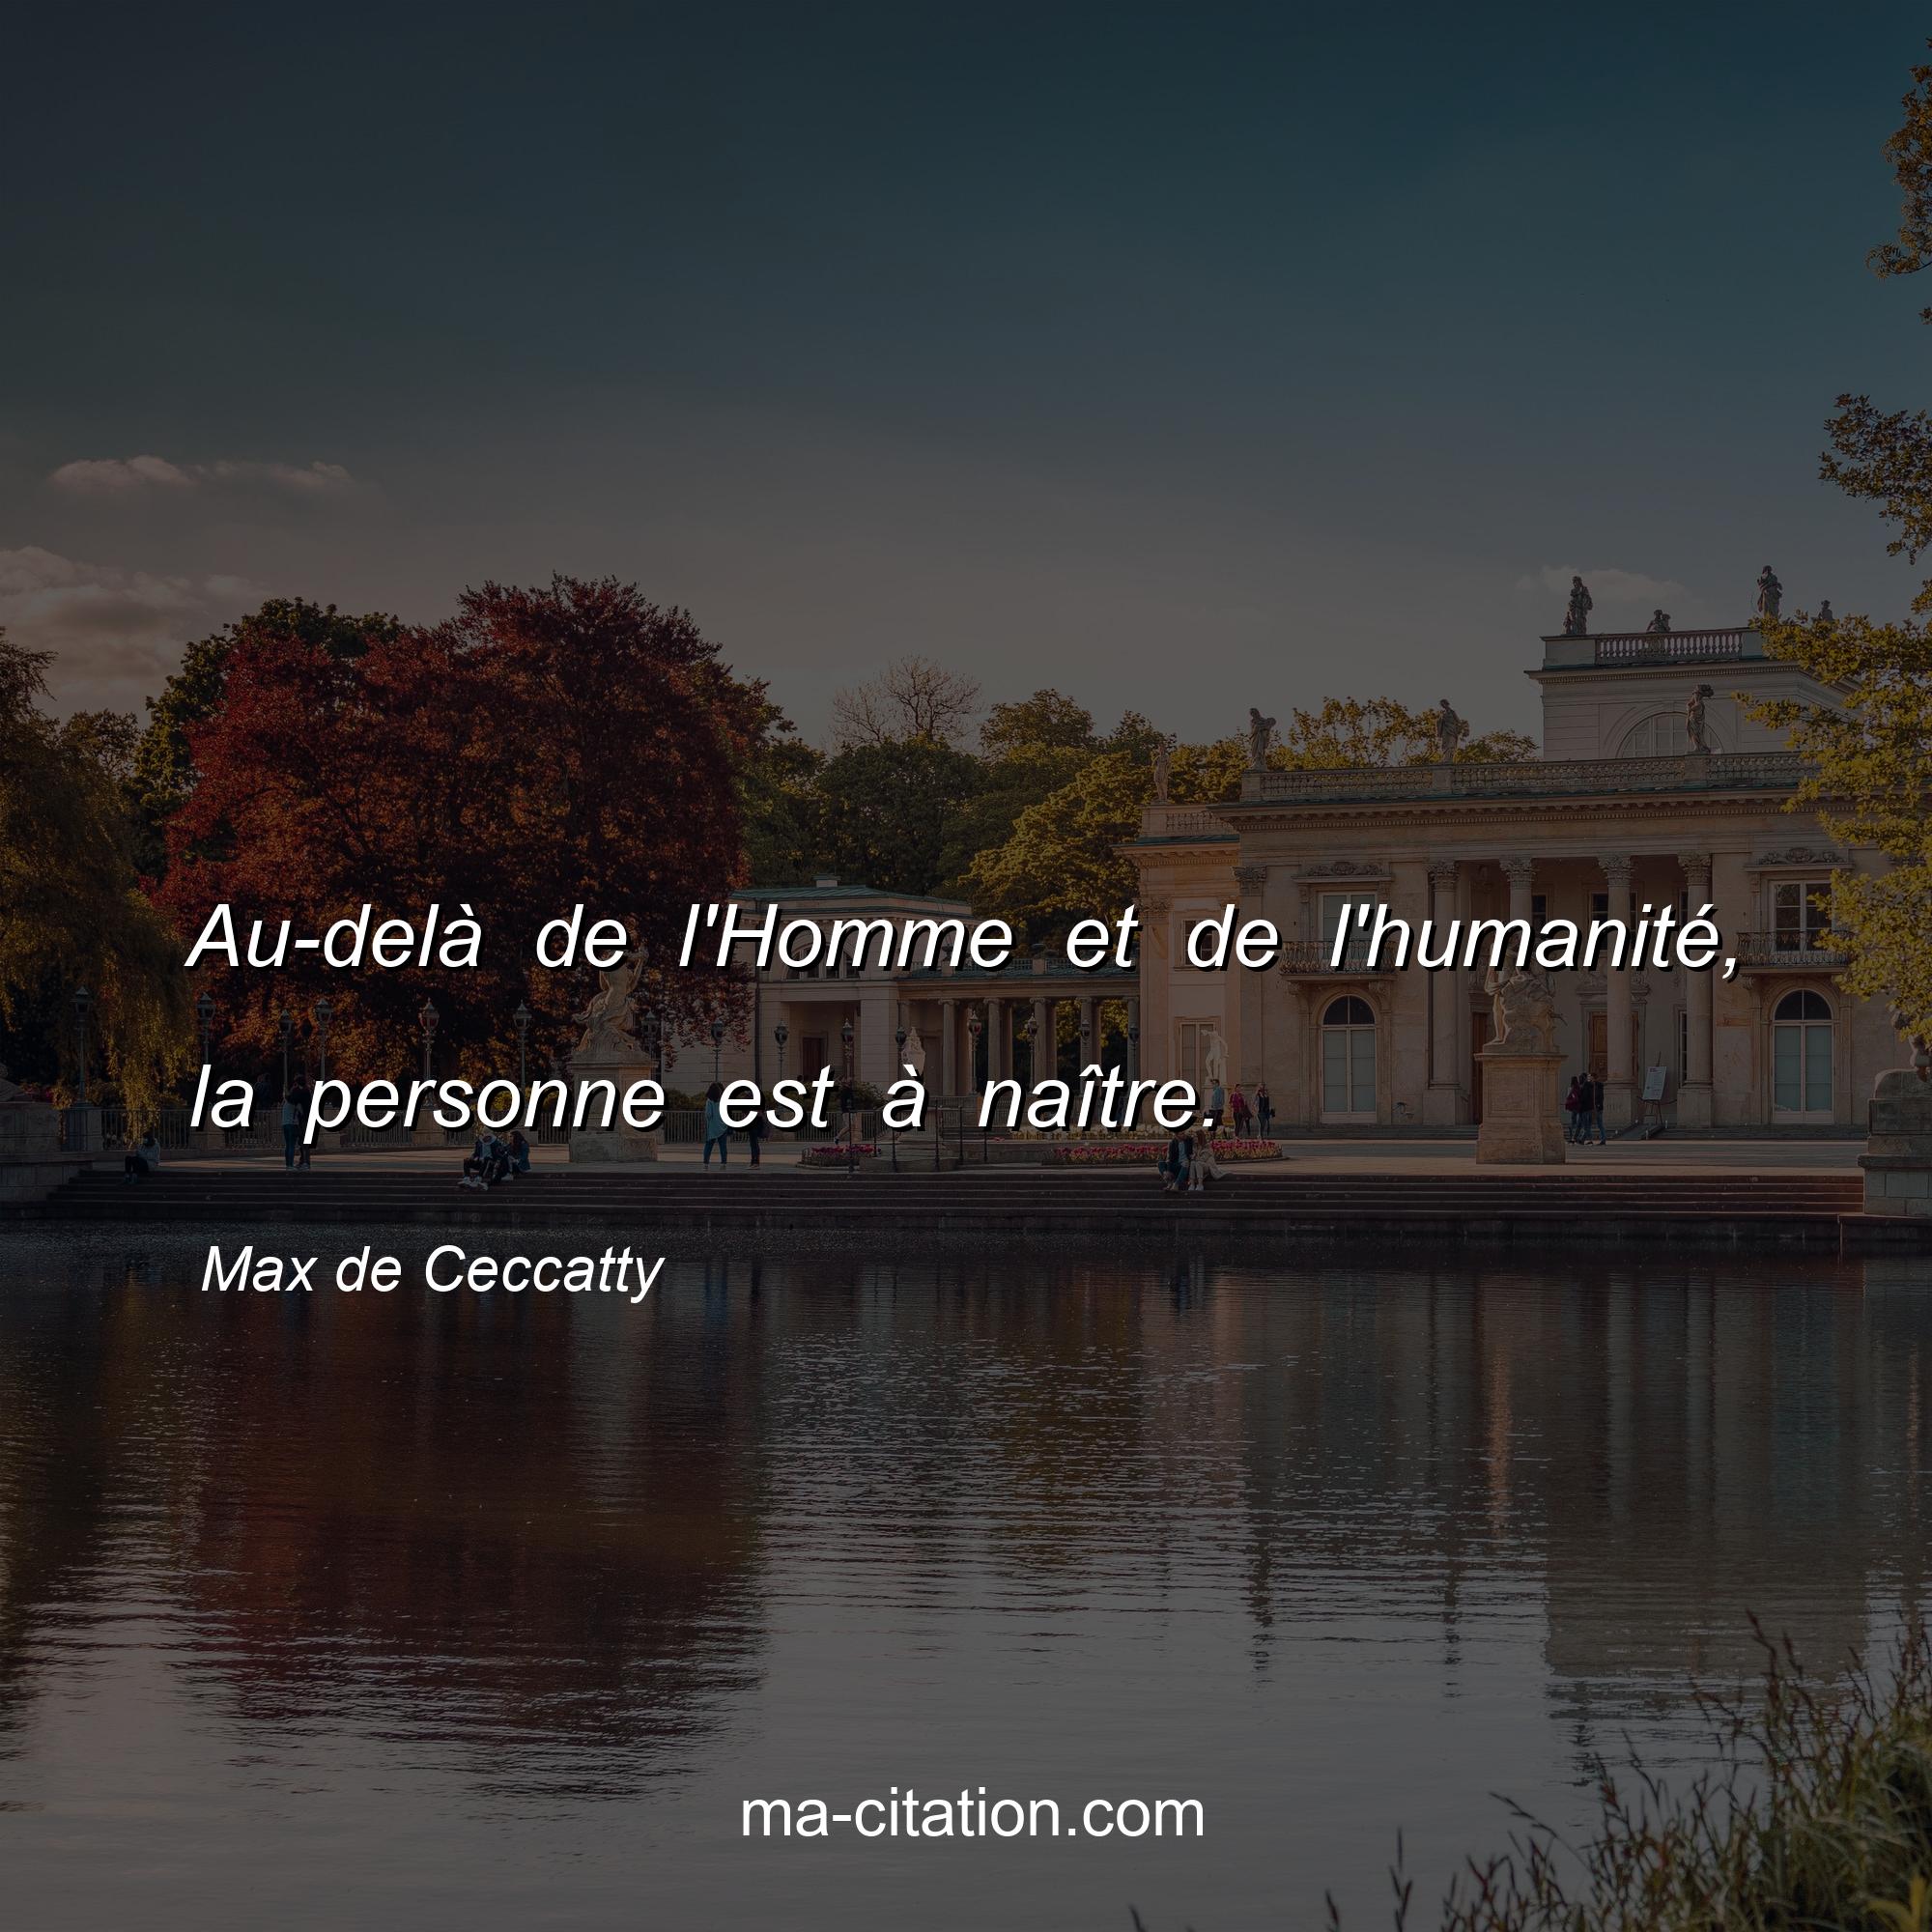 Max de Ceccatty : Au-delà de l'Homme et de l'humanité, la personne est à naître.